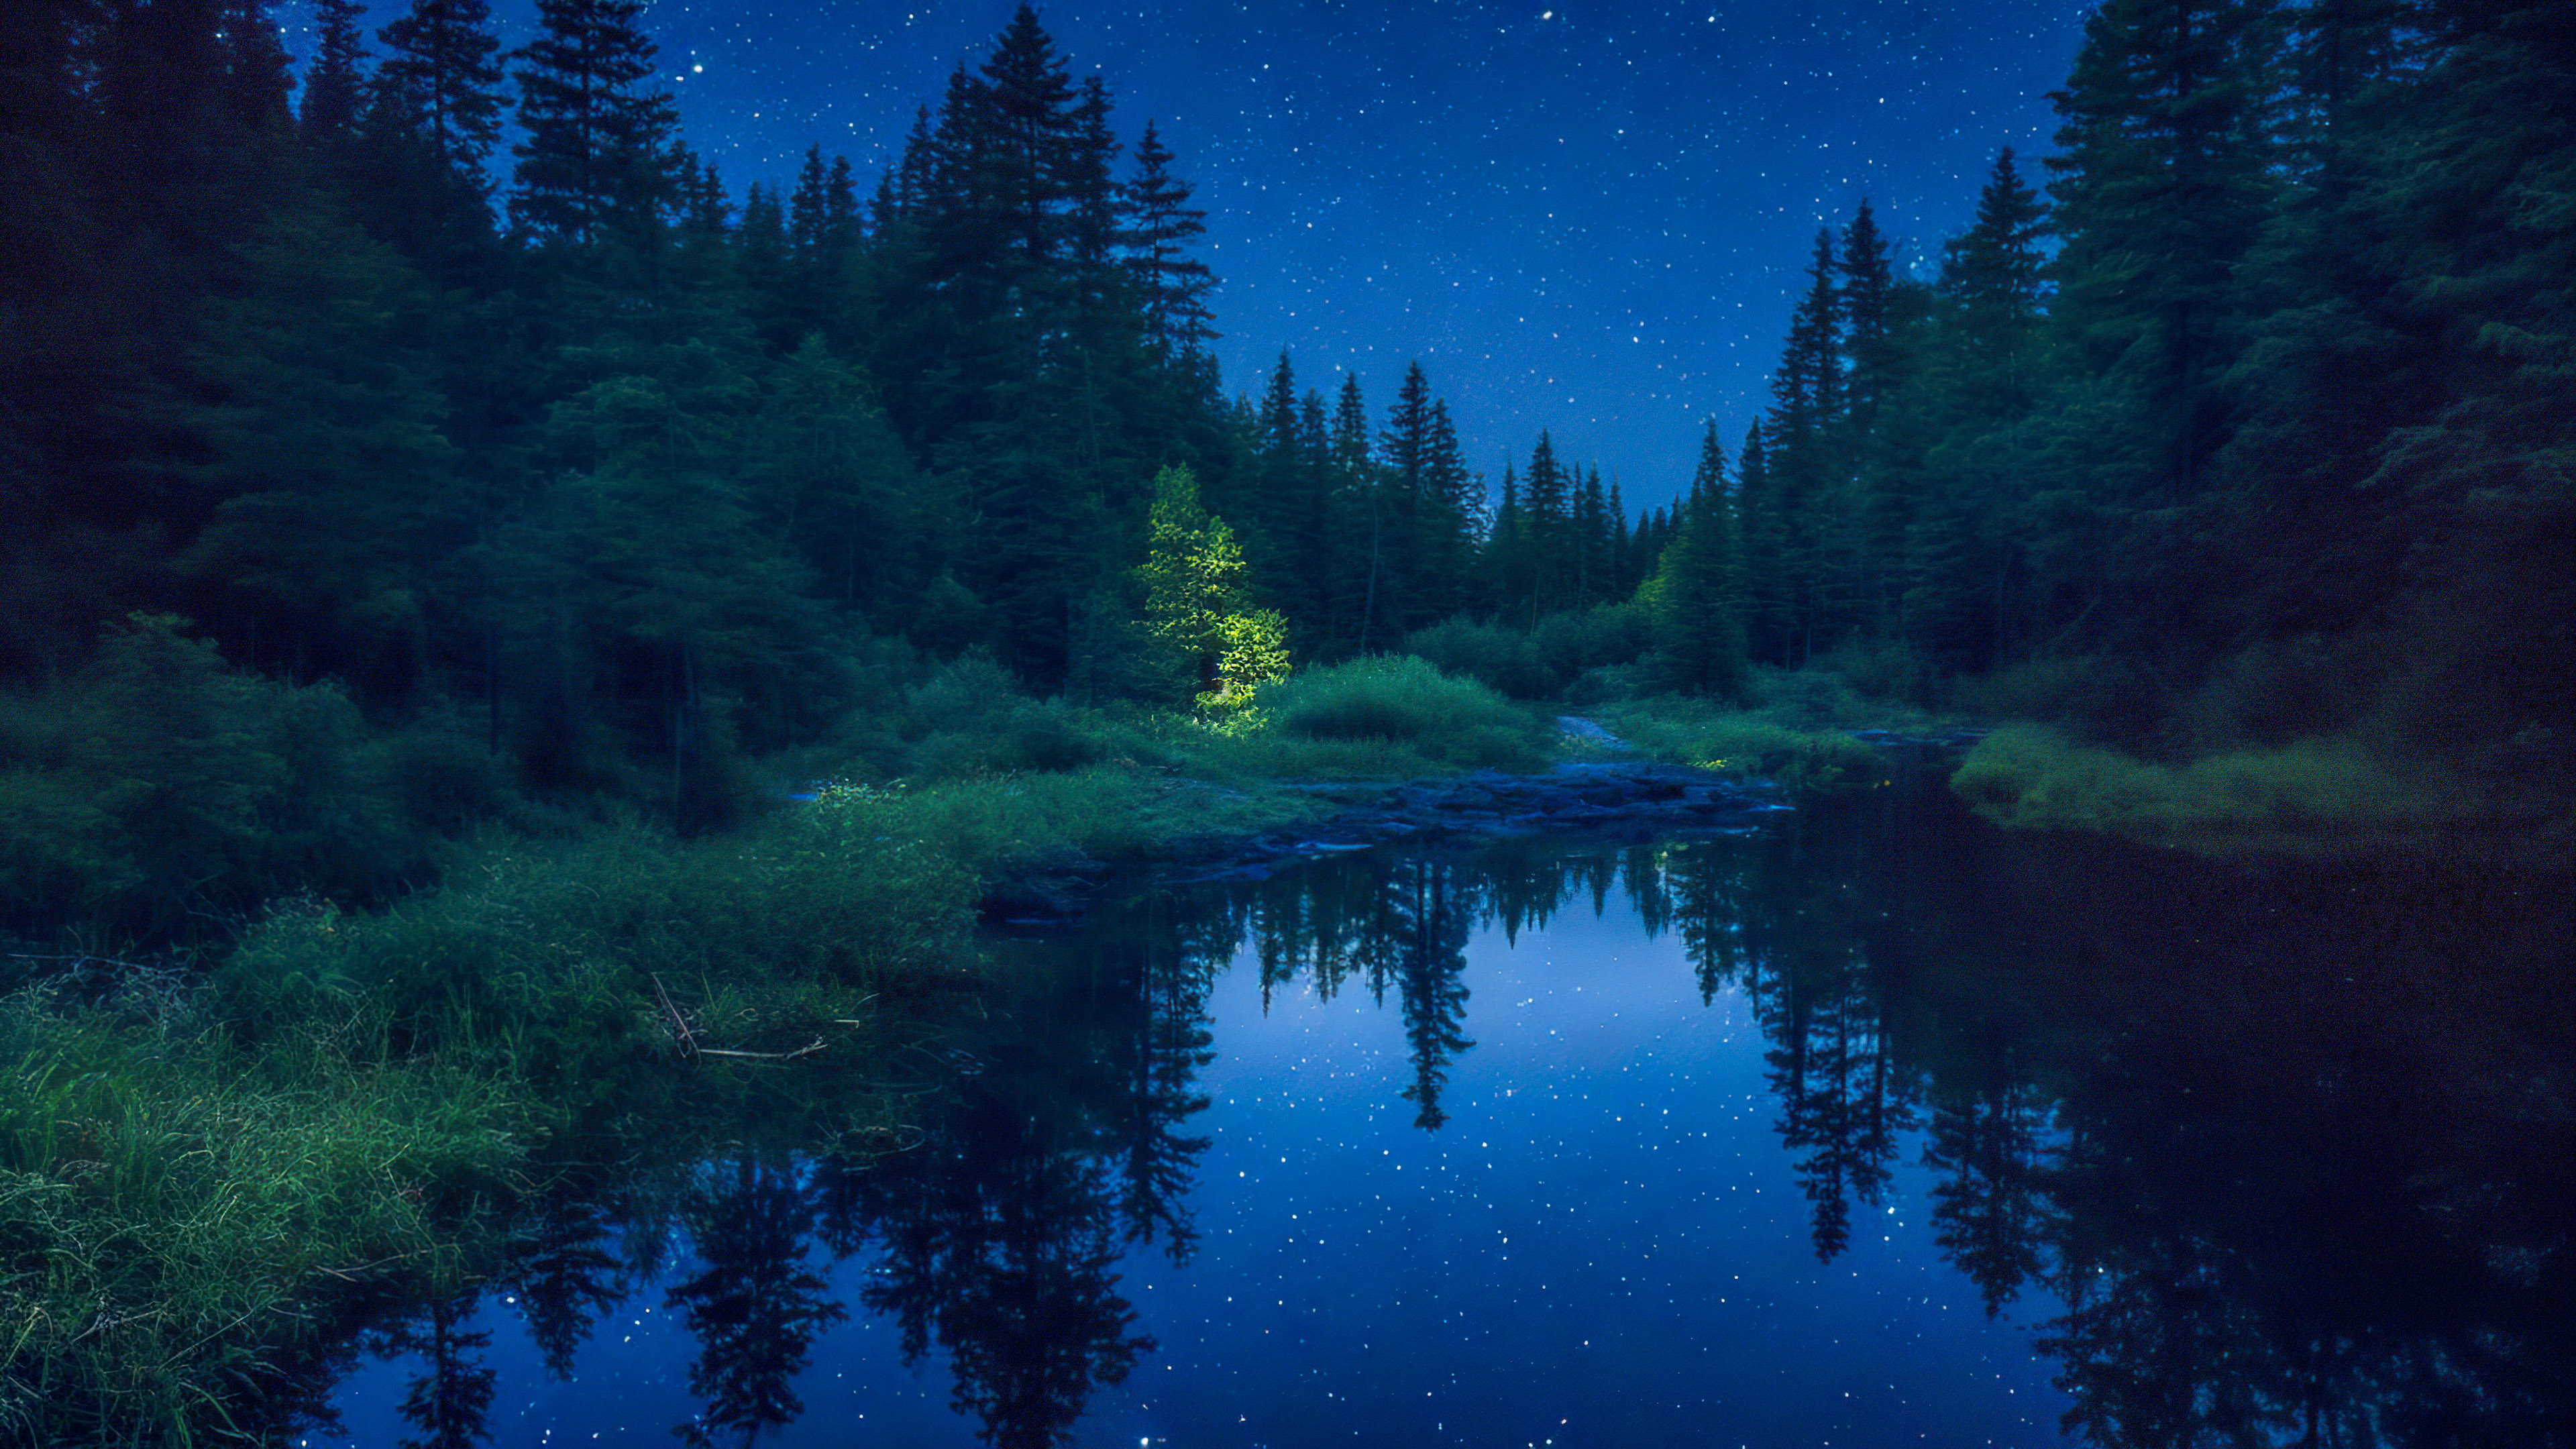 Vivez la tranquillité de notre beau fond d'écran de nuit, présentant une rivière paisible serpentant à travers une forêt dense, reflétant le ciel nocturne étincelant.